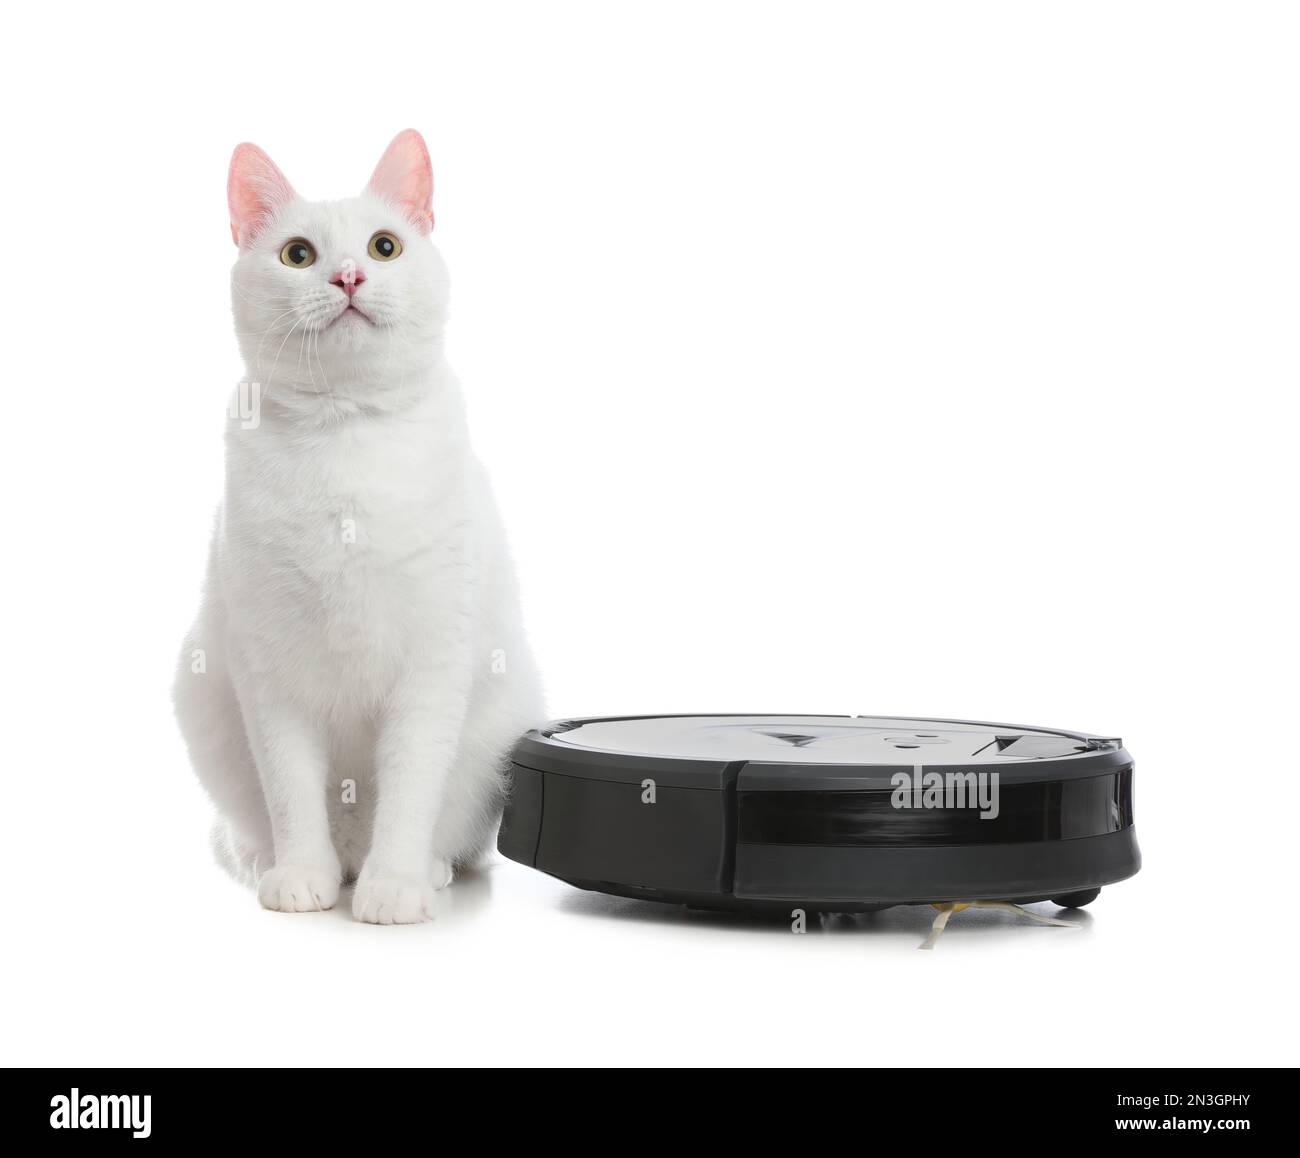 Moderner Roboter-Staubsauger und niedliche Katze auf weißem Hintergrund  Stockfotografie - Alamy